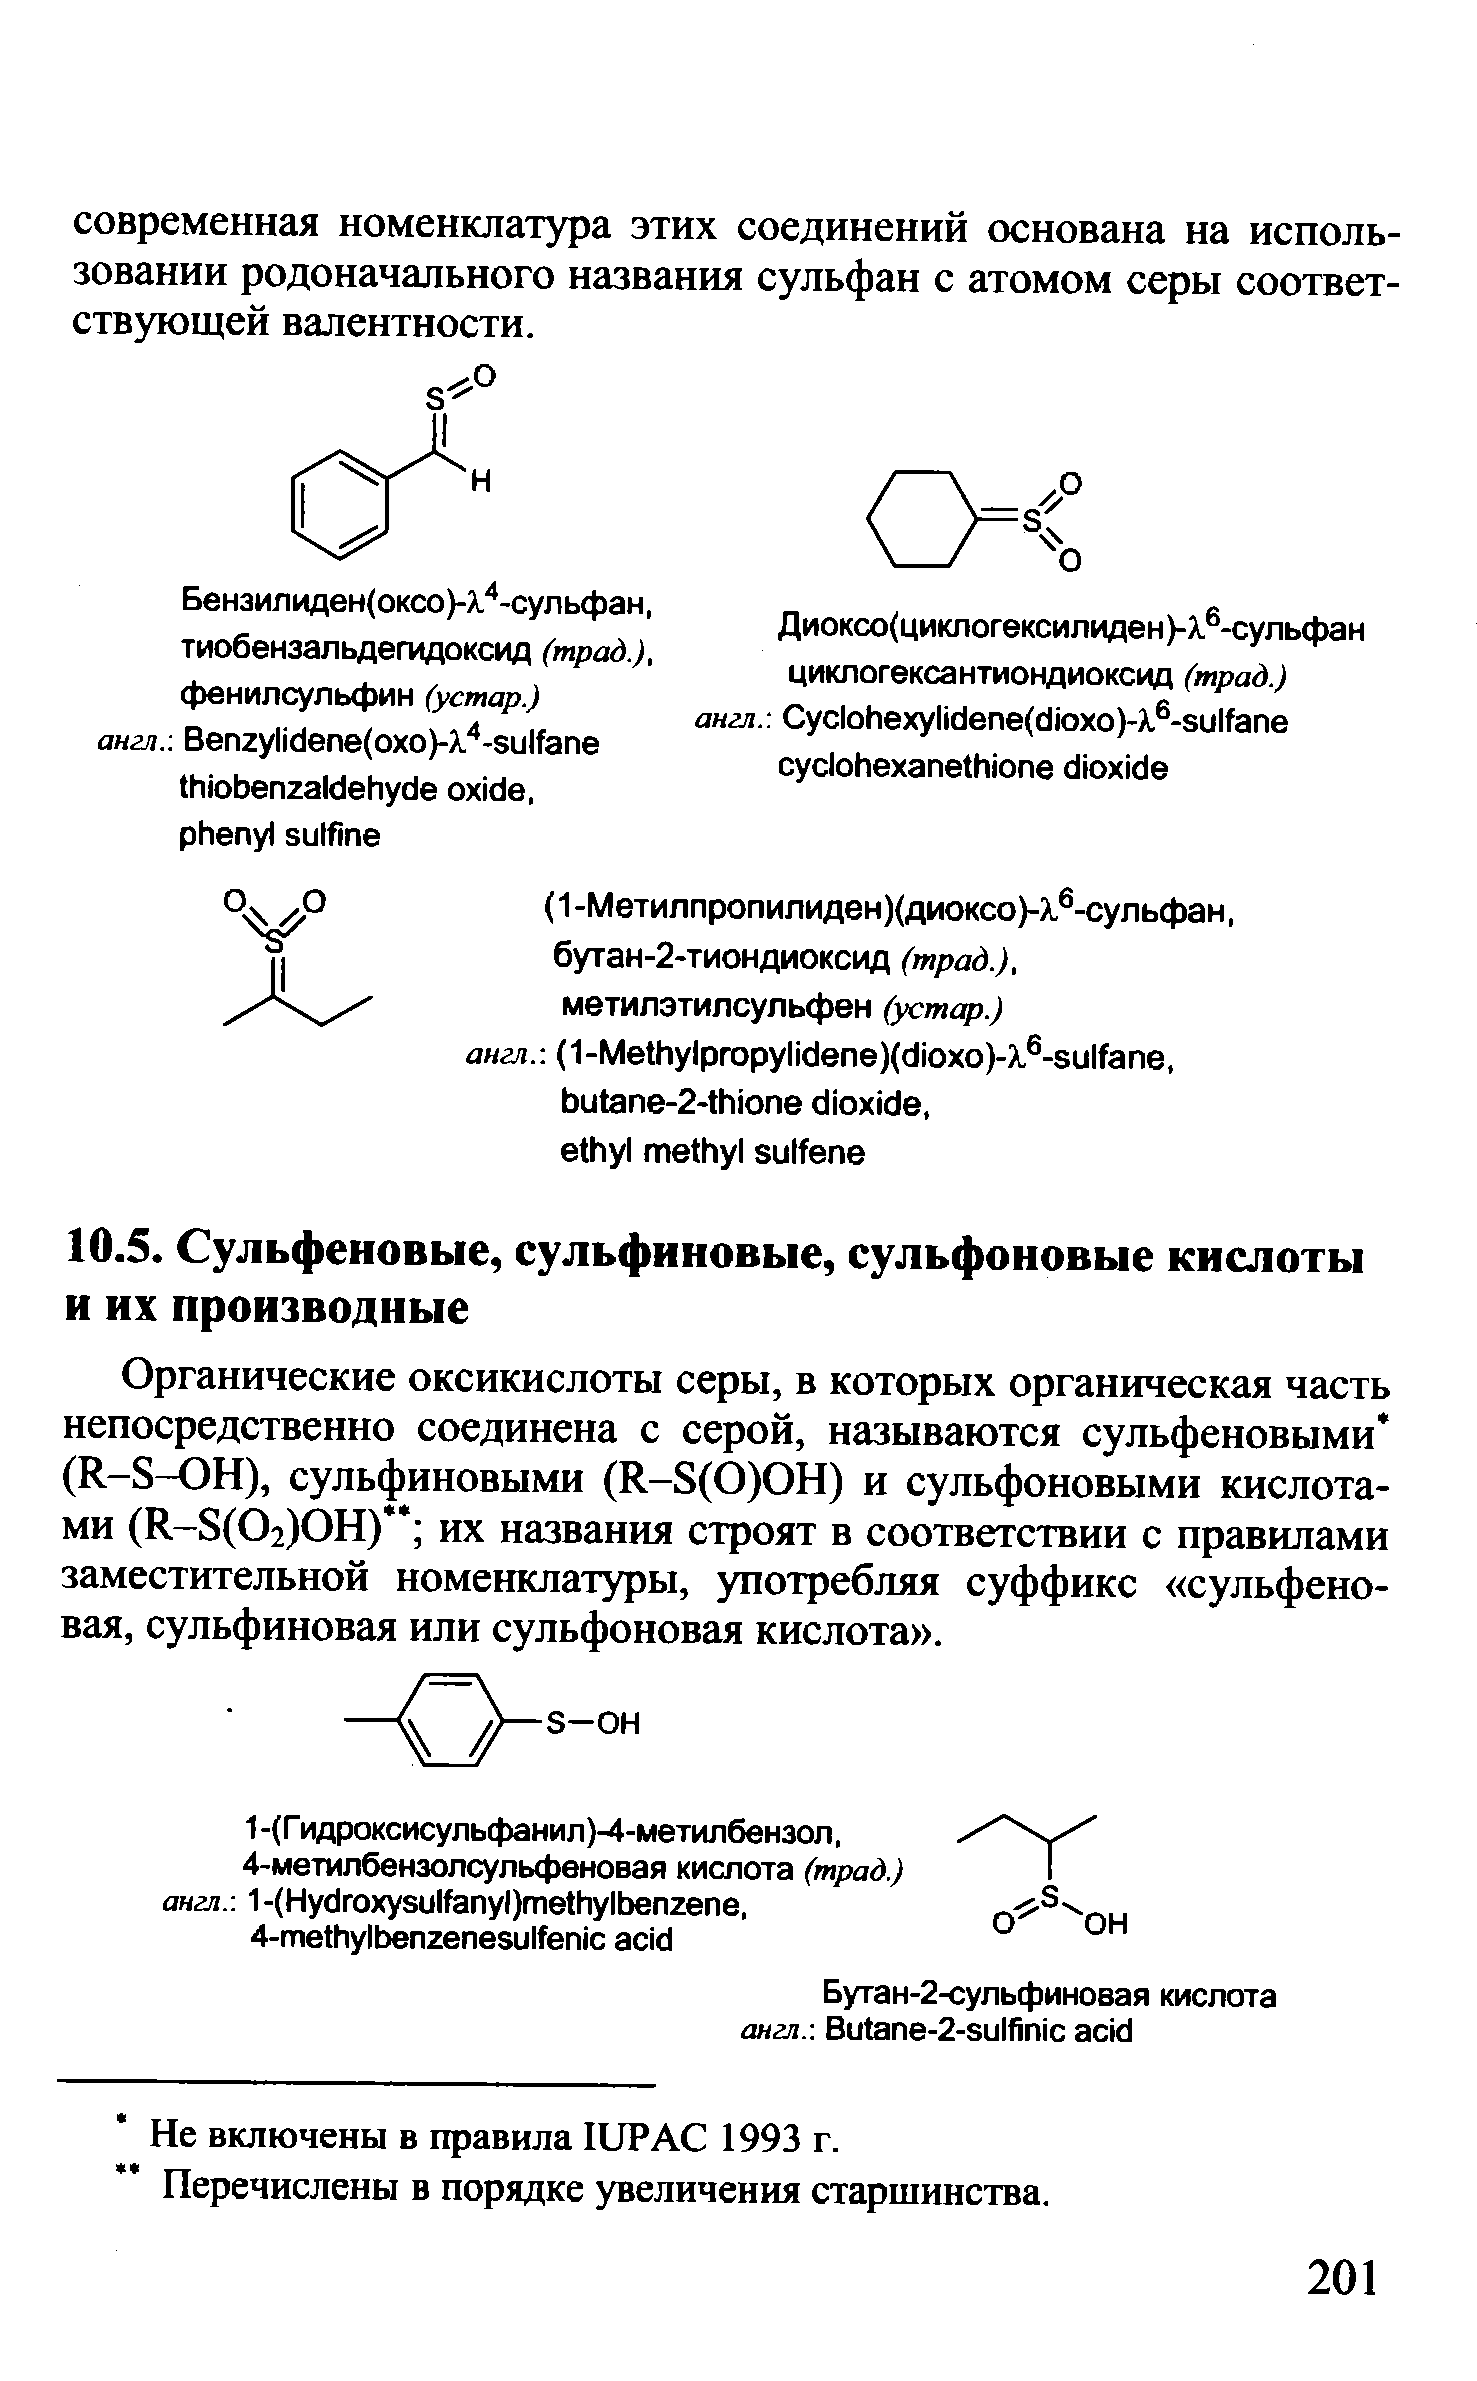 Органические оксикислоты серы, в которых органическая часть непосредственно соединена с серой, называются сульфеновыми (К-8-ЪН), сульфиновыми (К-8(0)0Н) и сульфоновыми кислотами (К-8(02)0Н) их названия строят в соответствии с правилами заместительной номенклатуры, употребляя суффикс сульфено-вая, сульфиновая или сульфоновая кислота .